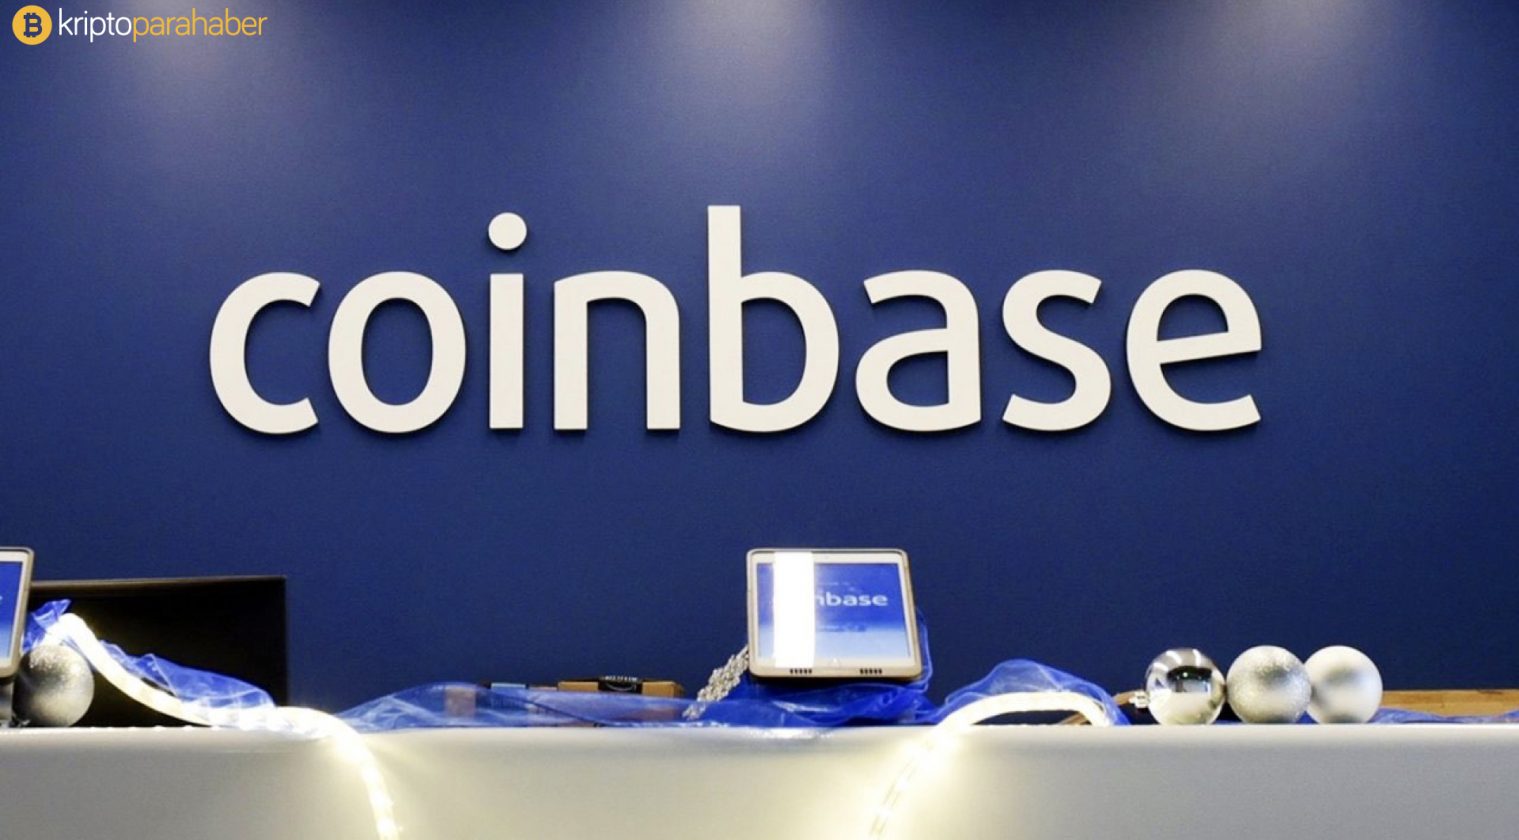 Kripto alanında ne kadar bilgilisiniz: Coinbase 100 milyon dolar dağıtıyor